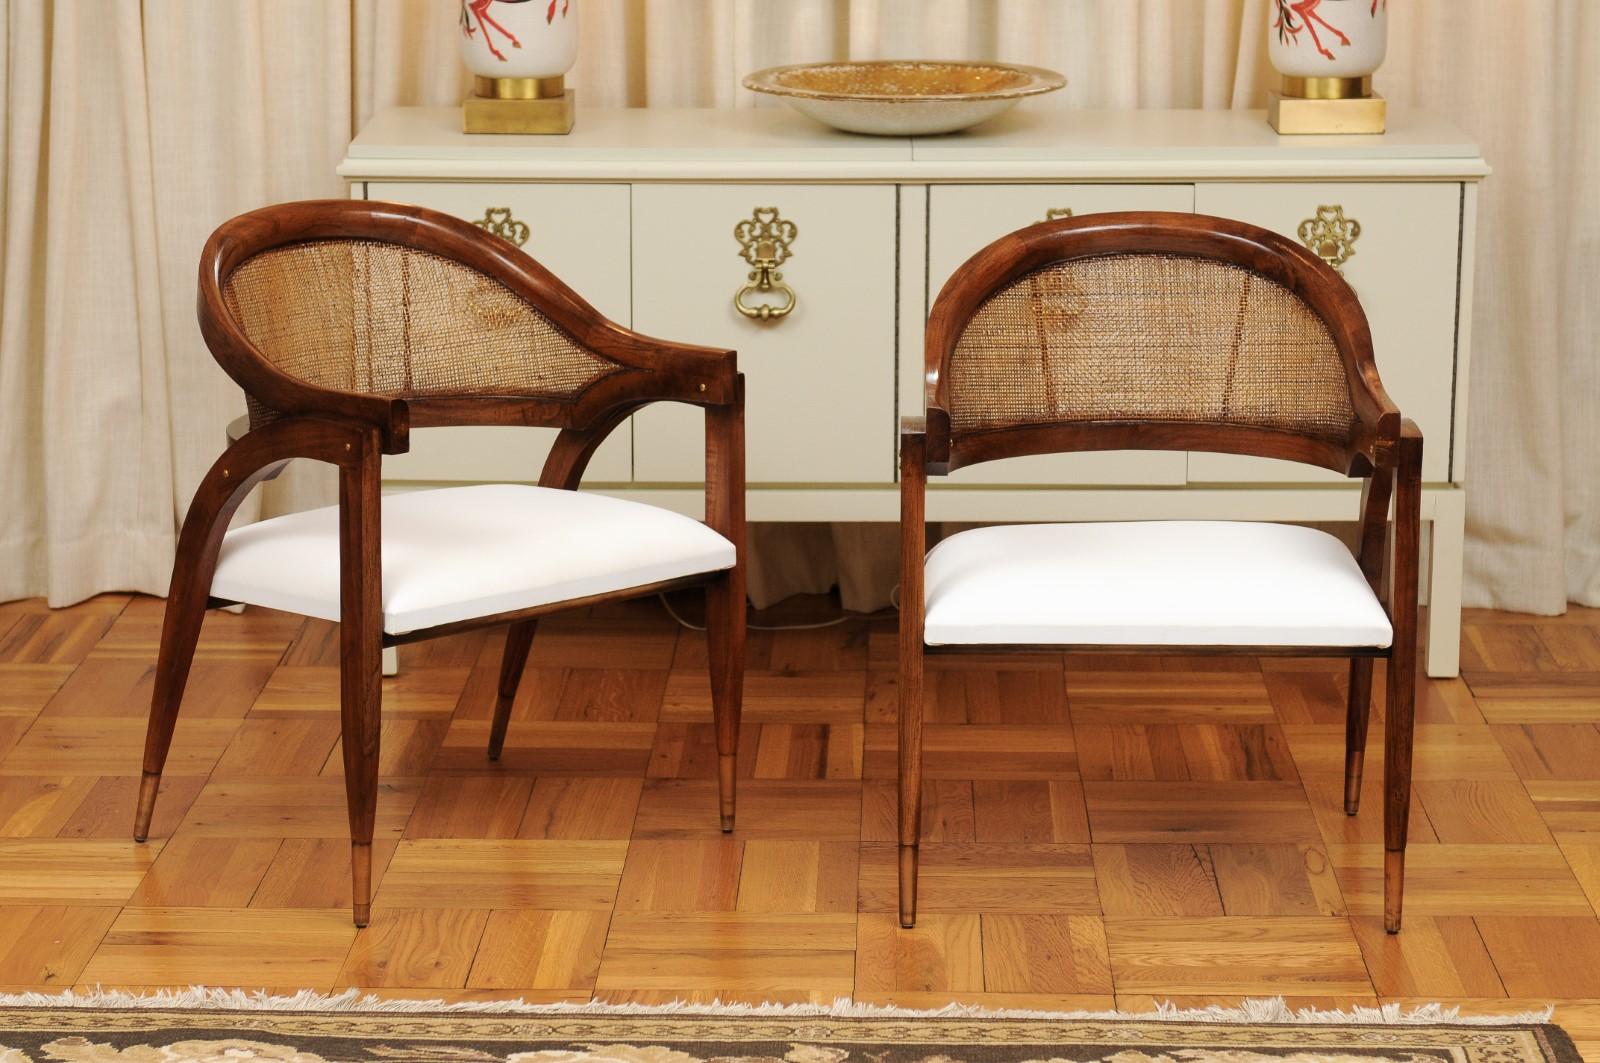 Ces magnifiques chaises sont expédiées telles qu'elles ont été photographiées par des professionnels et décrites dans le texte de l'annonce : Méticuleusement restaurées par des professionnels et prêtes à être installées. Un service de tissu sur